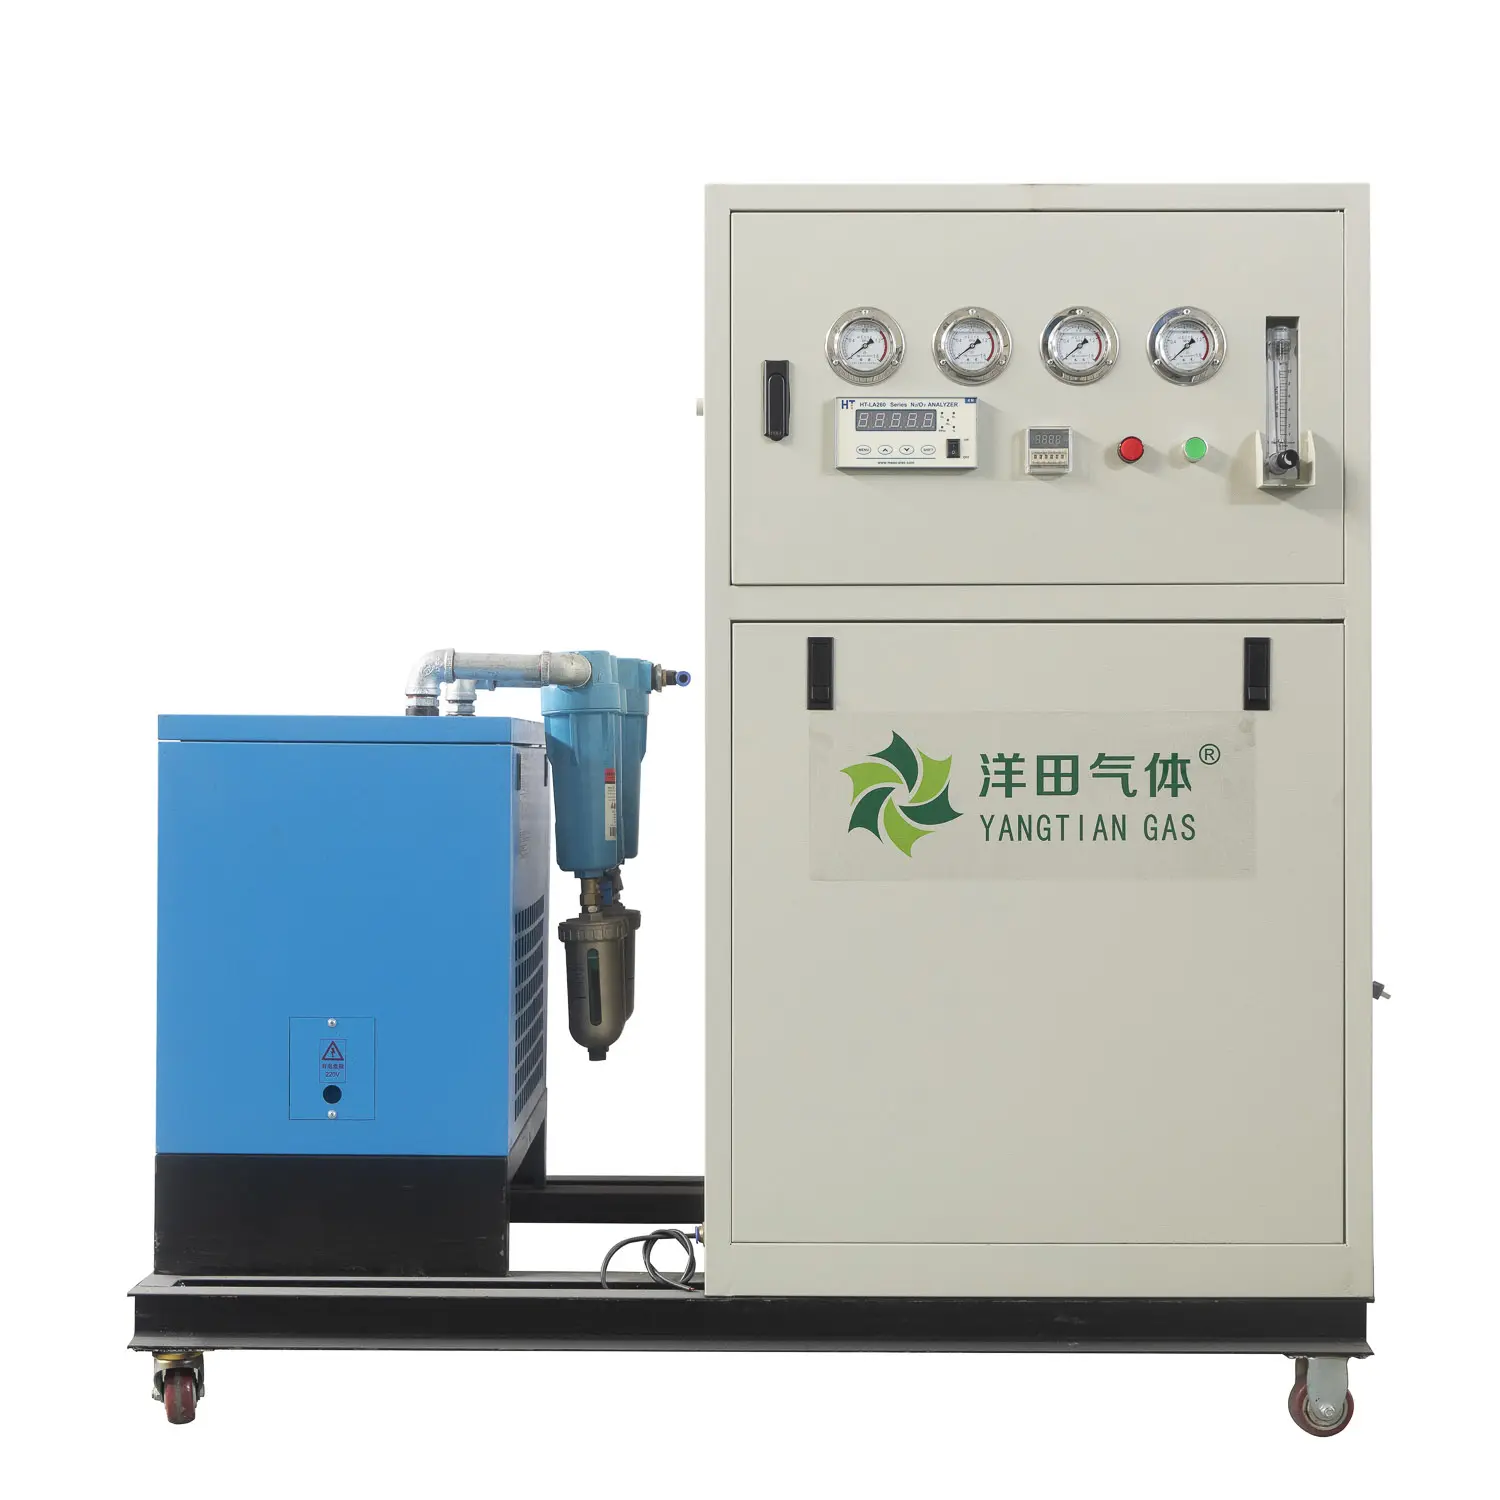 Cina vendita alta pressione 7.5hp 2000 w generatore di idrogeno e azoto